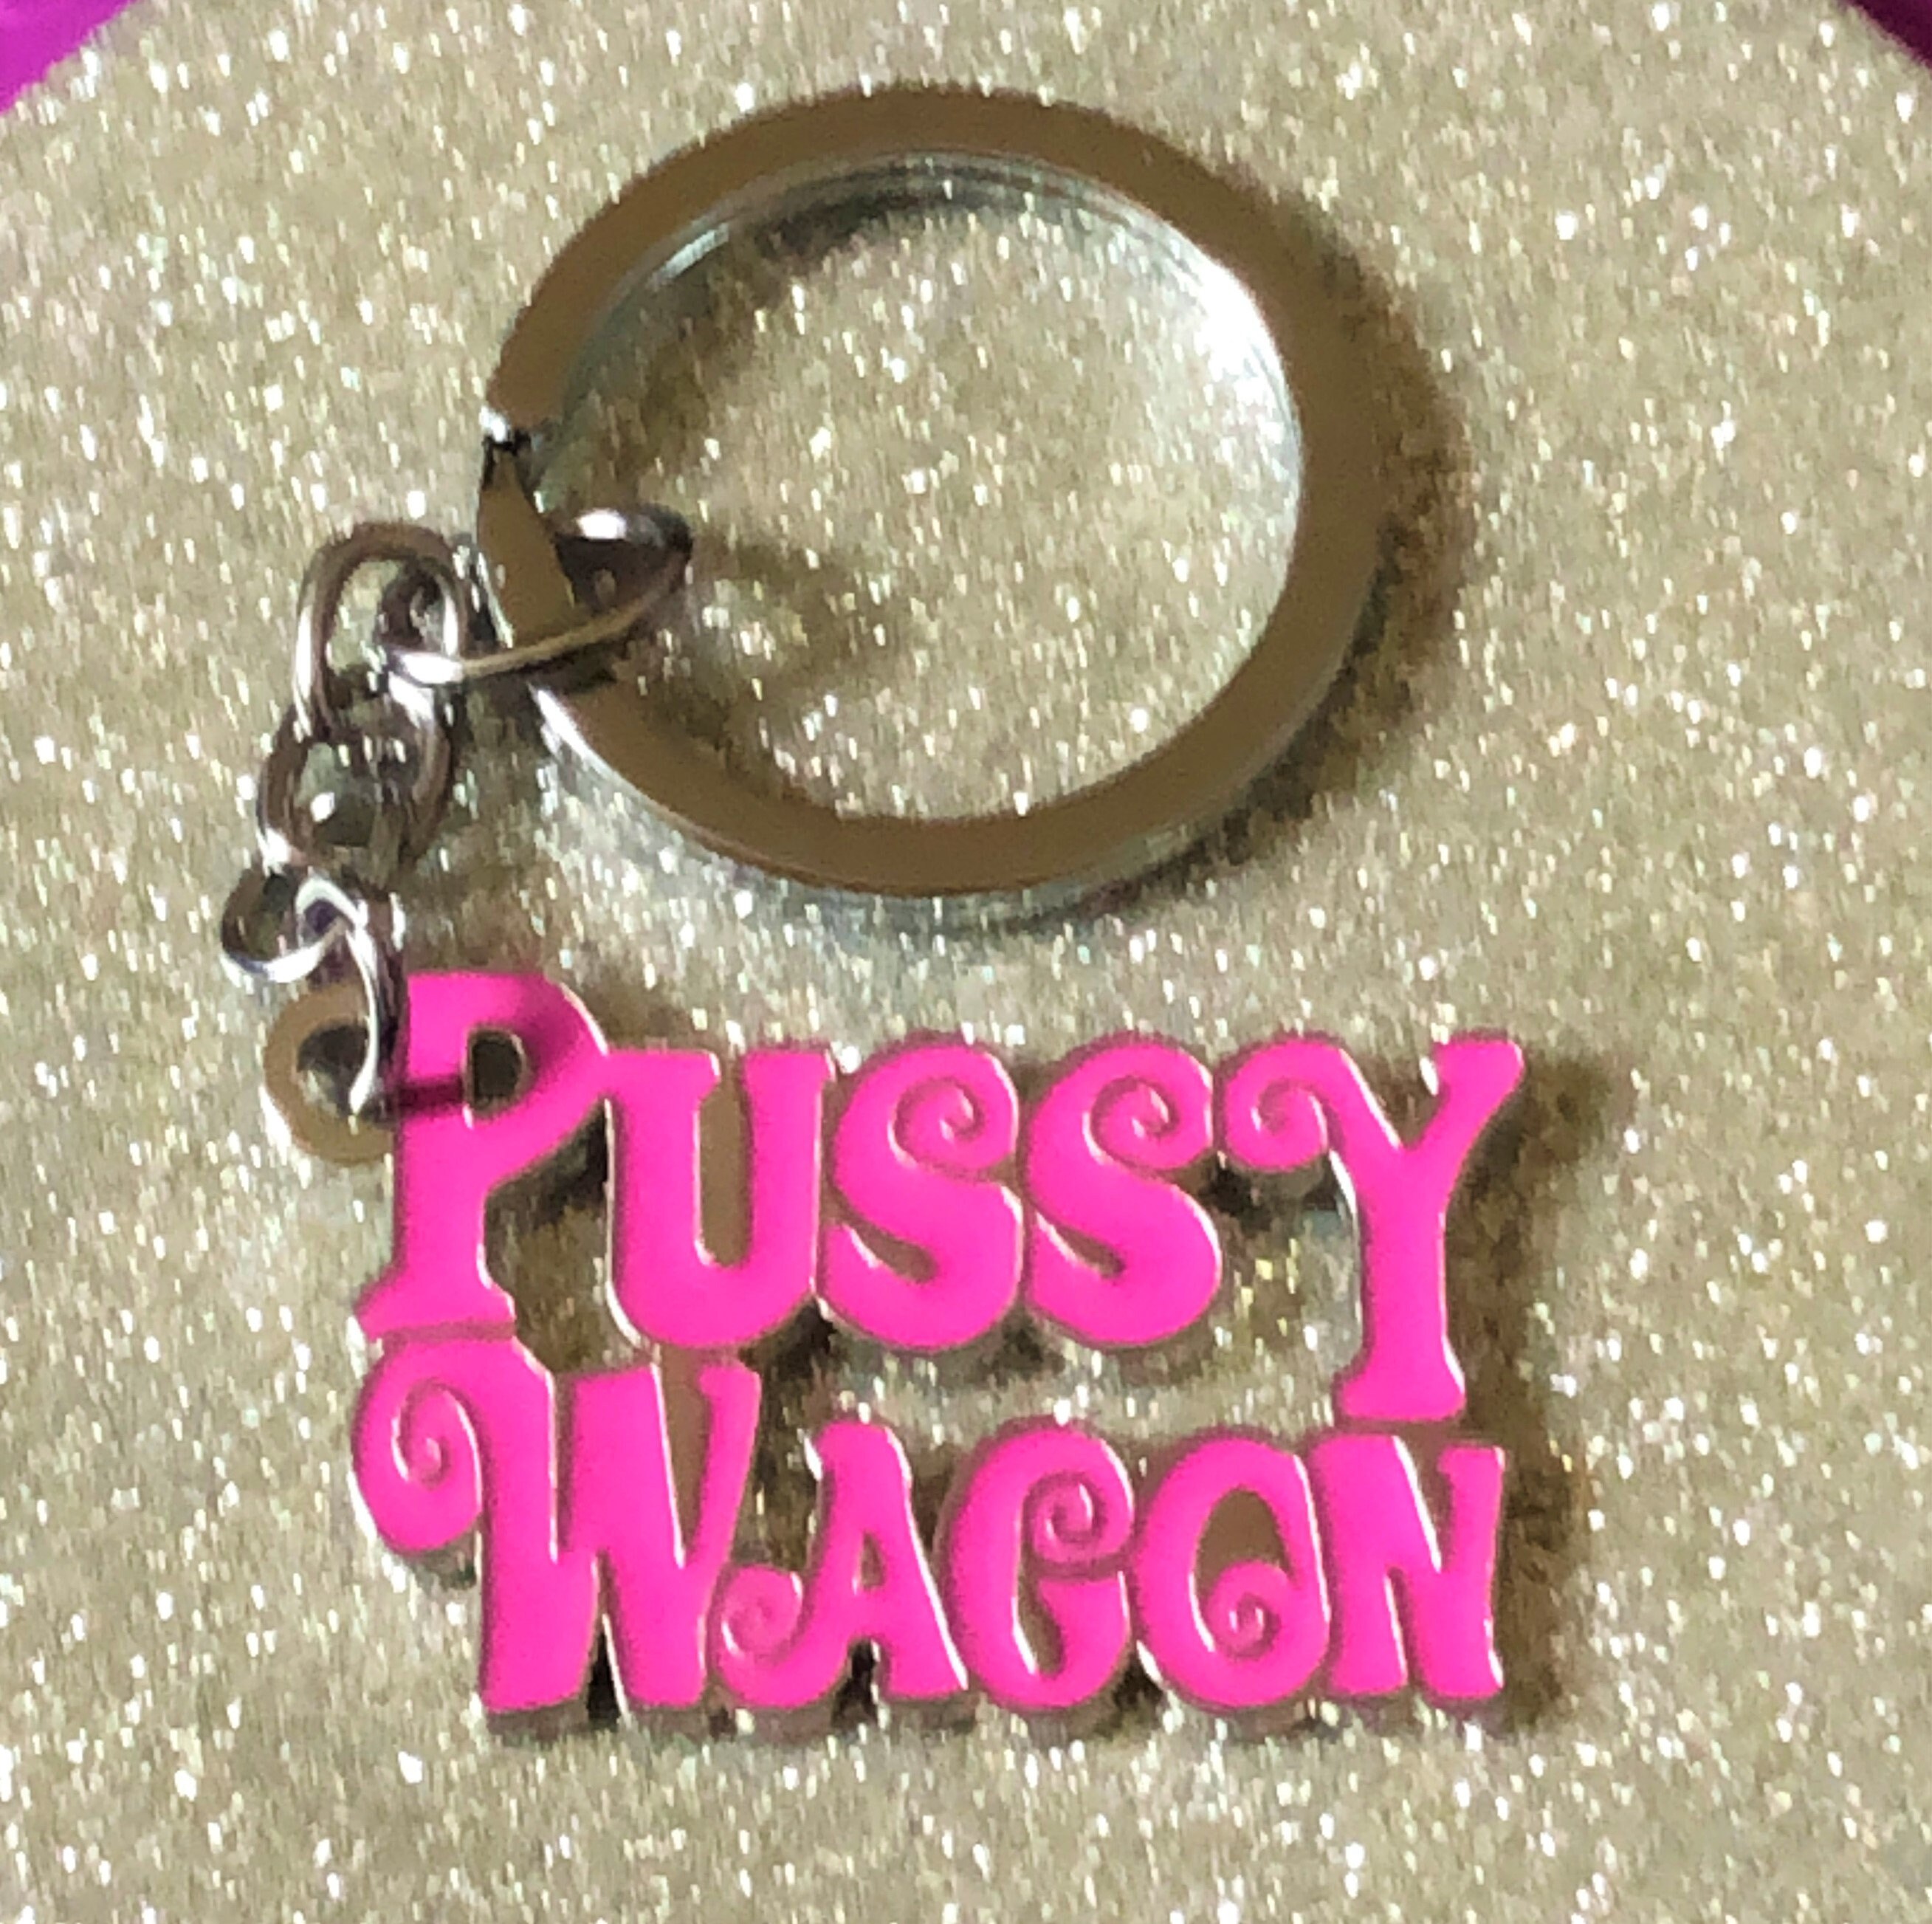 Action Movie Kill Bill Pink Pussy Wagon Logo Alloy Key